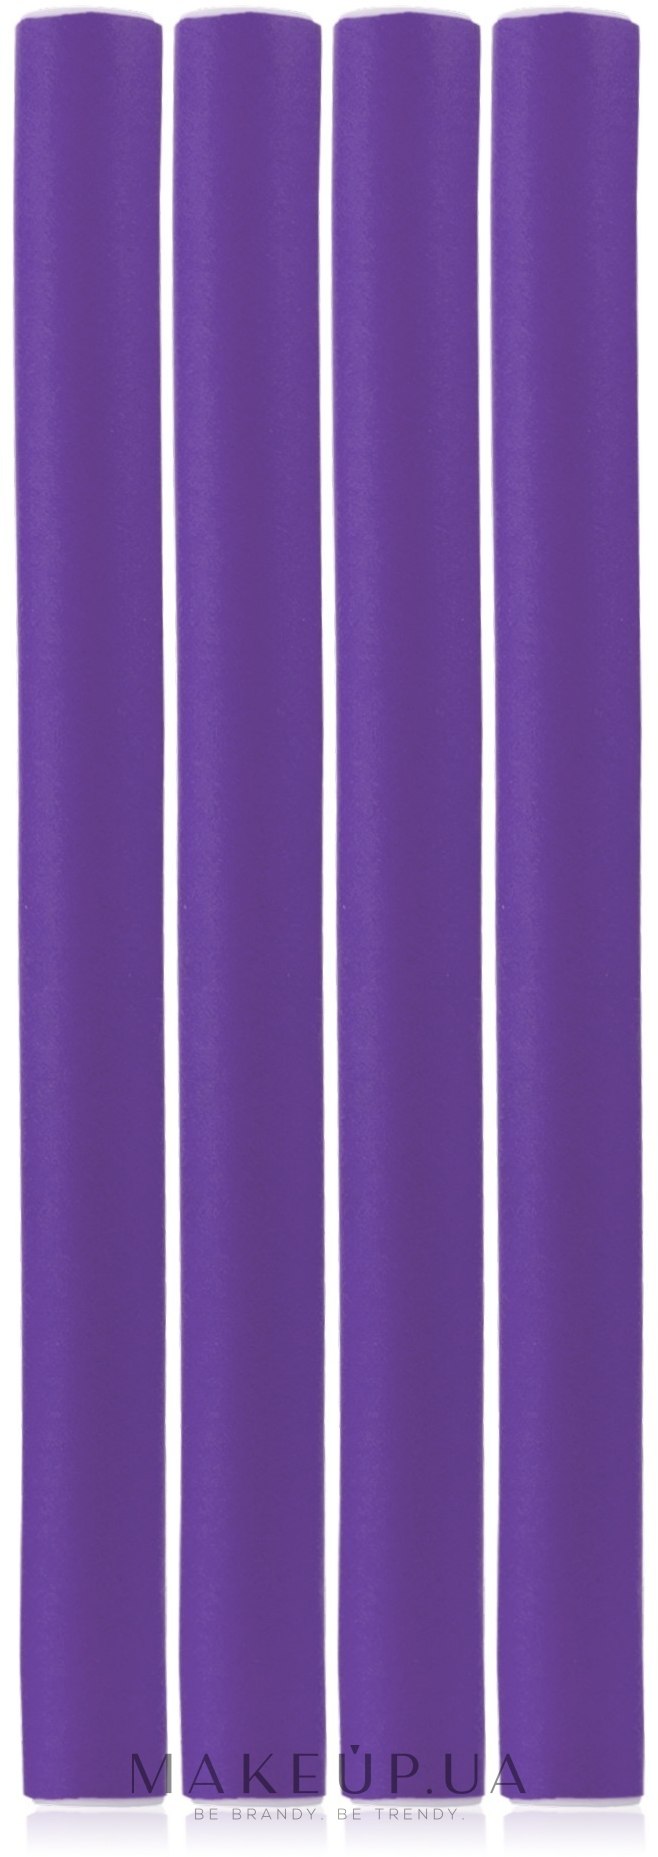 Бигуди-папильоты из неопрена, 4 шт, фиолетовые - Top Choice — фото 4шт